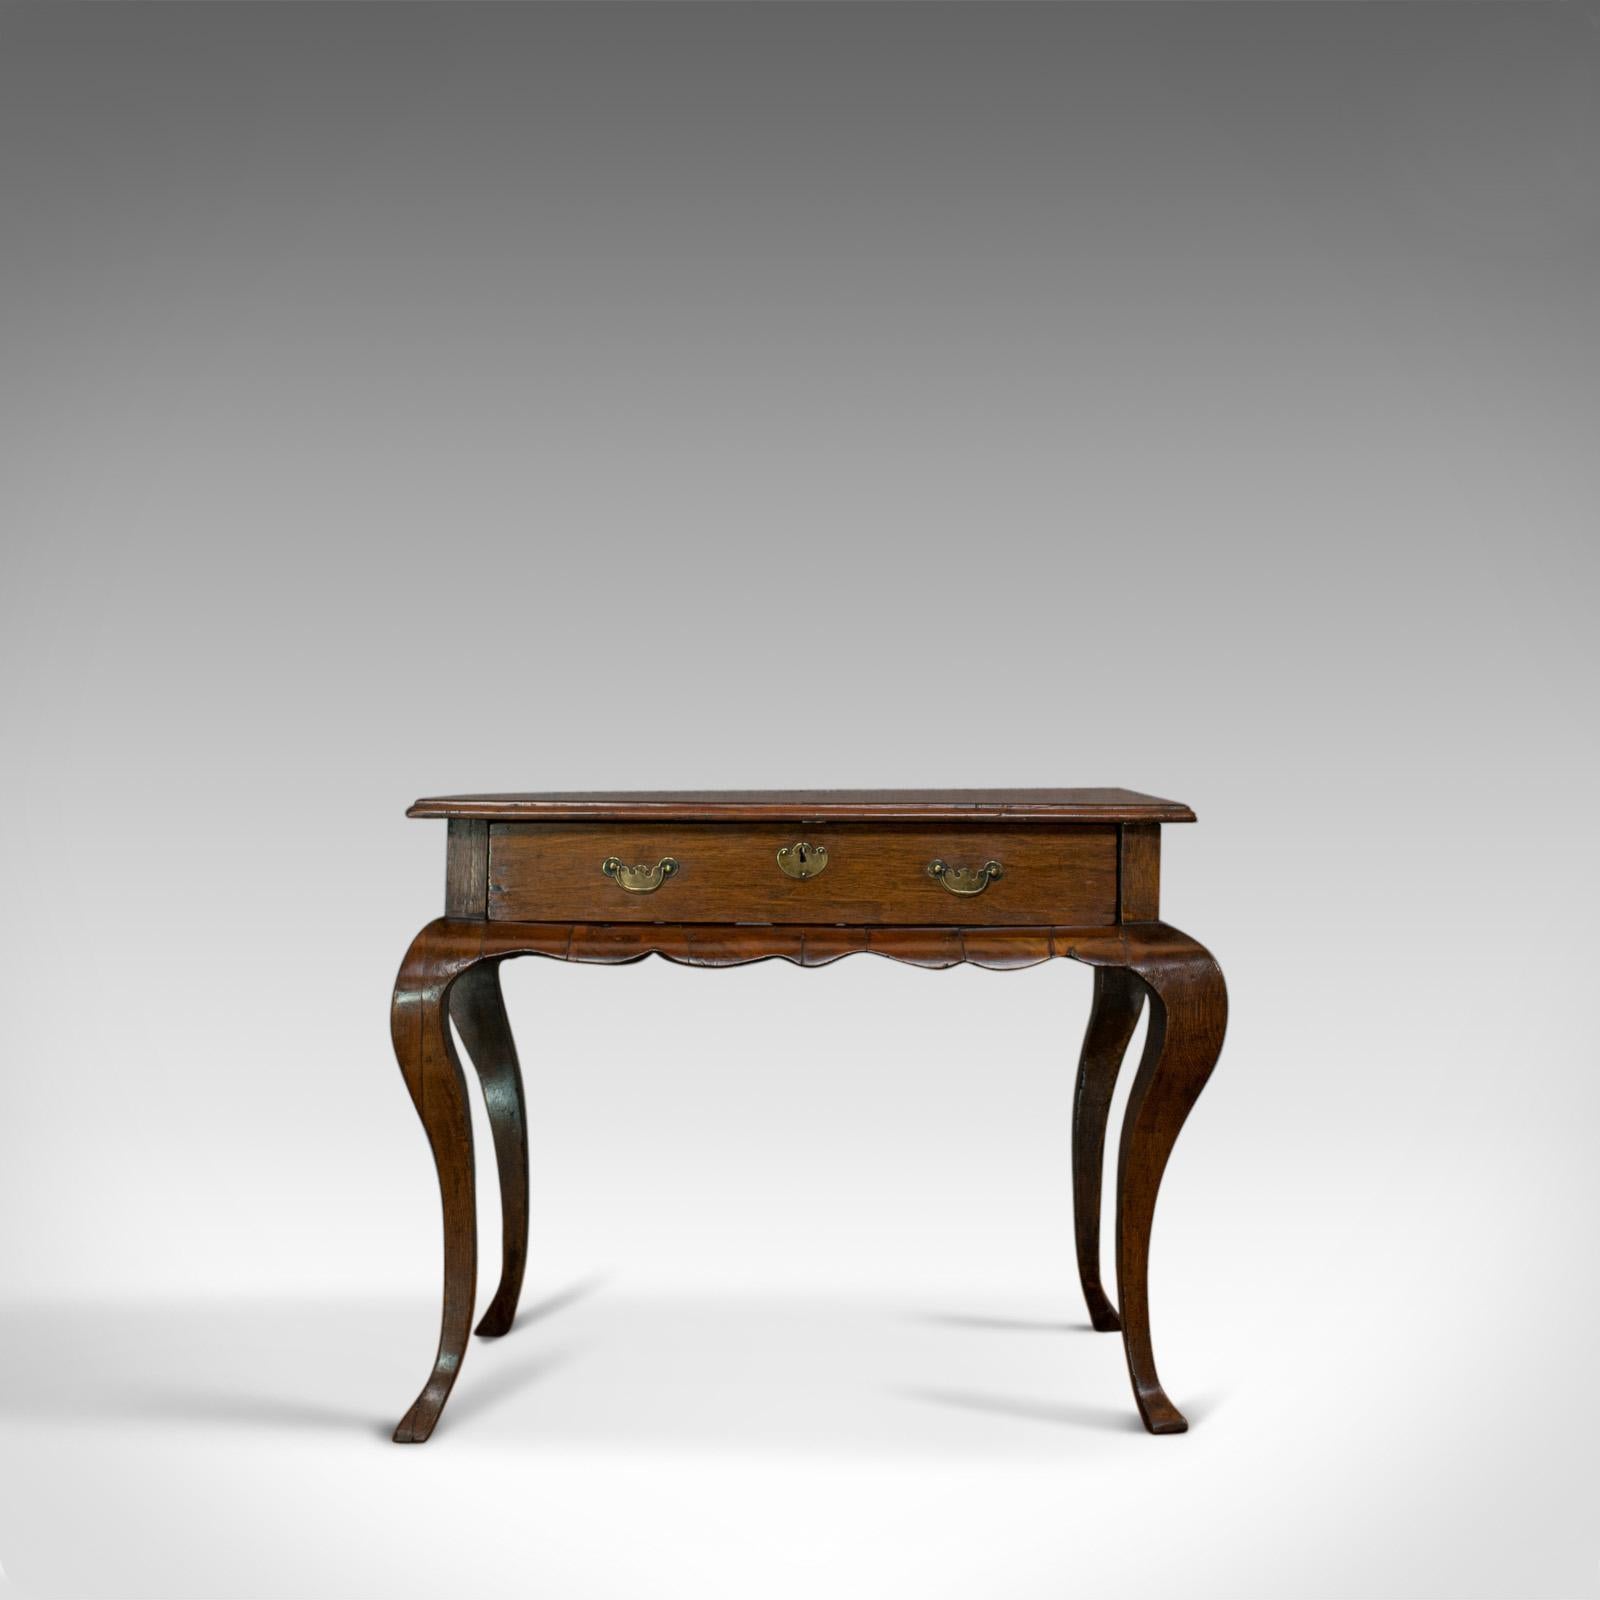 Il s'agit d'une table centrale ancienne. Table d'appoint flamande en acajou et chêne, de goût hollandais prononcé, datant de la fin du XVIIIe siècle, vers 1800.

Forme serpentine attrayante en coupes sélectionnées d'acajou et de chêne
Intérêt du